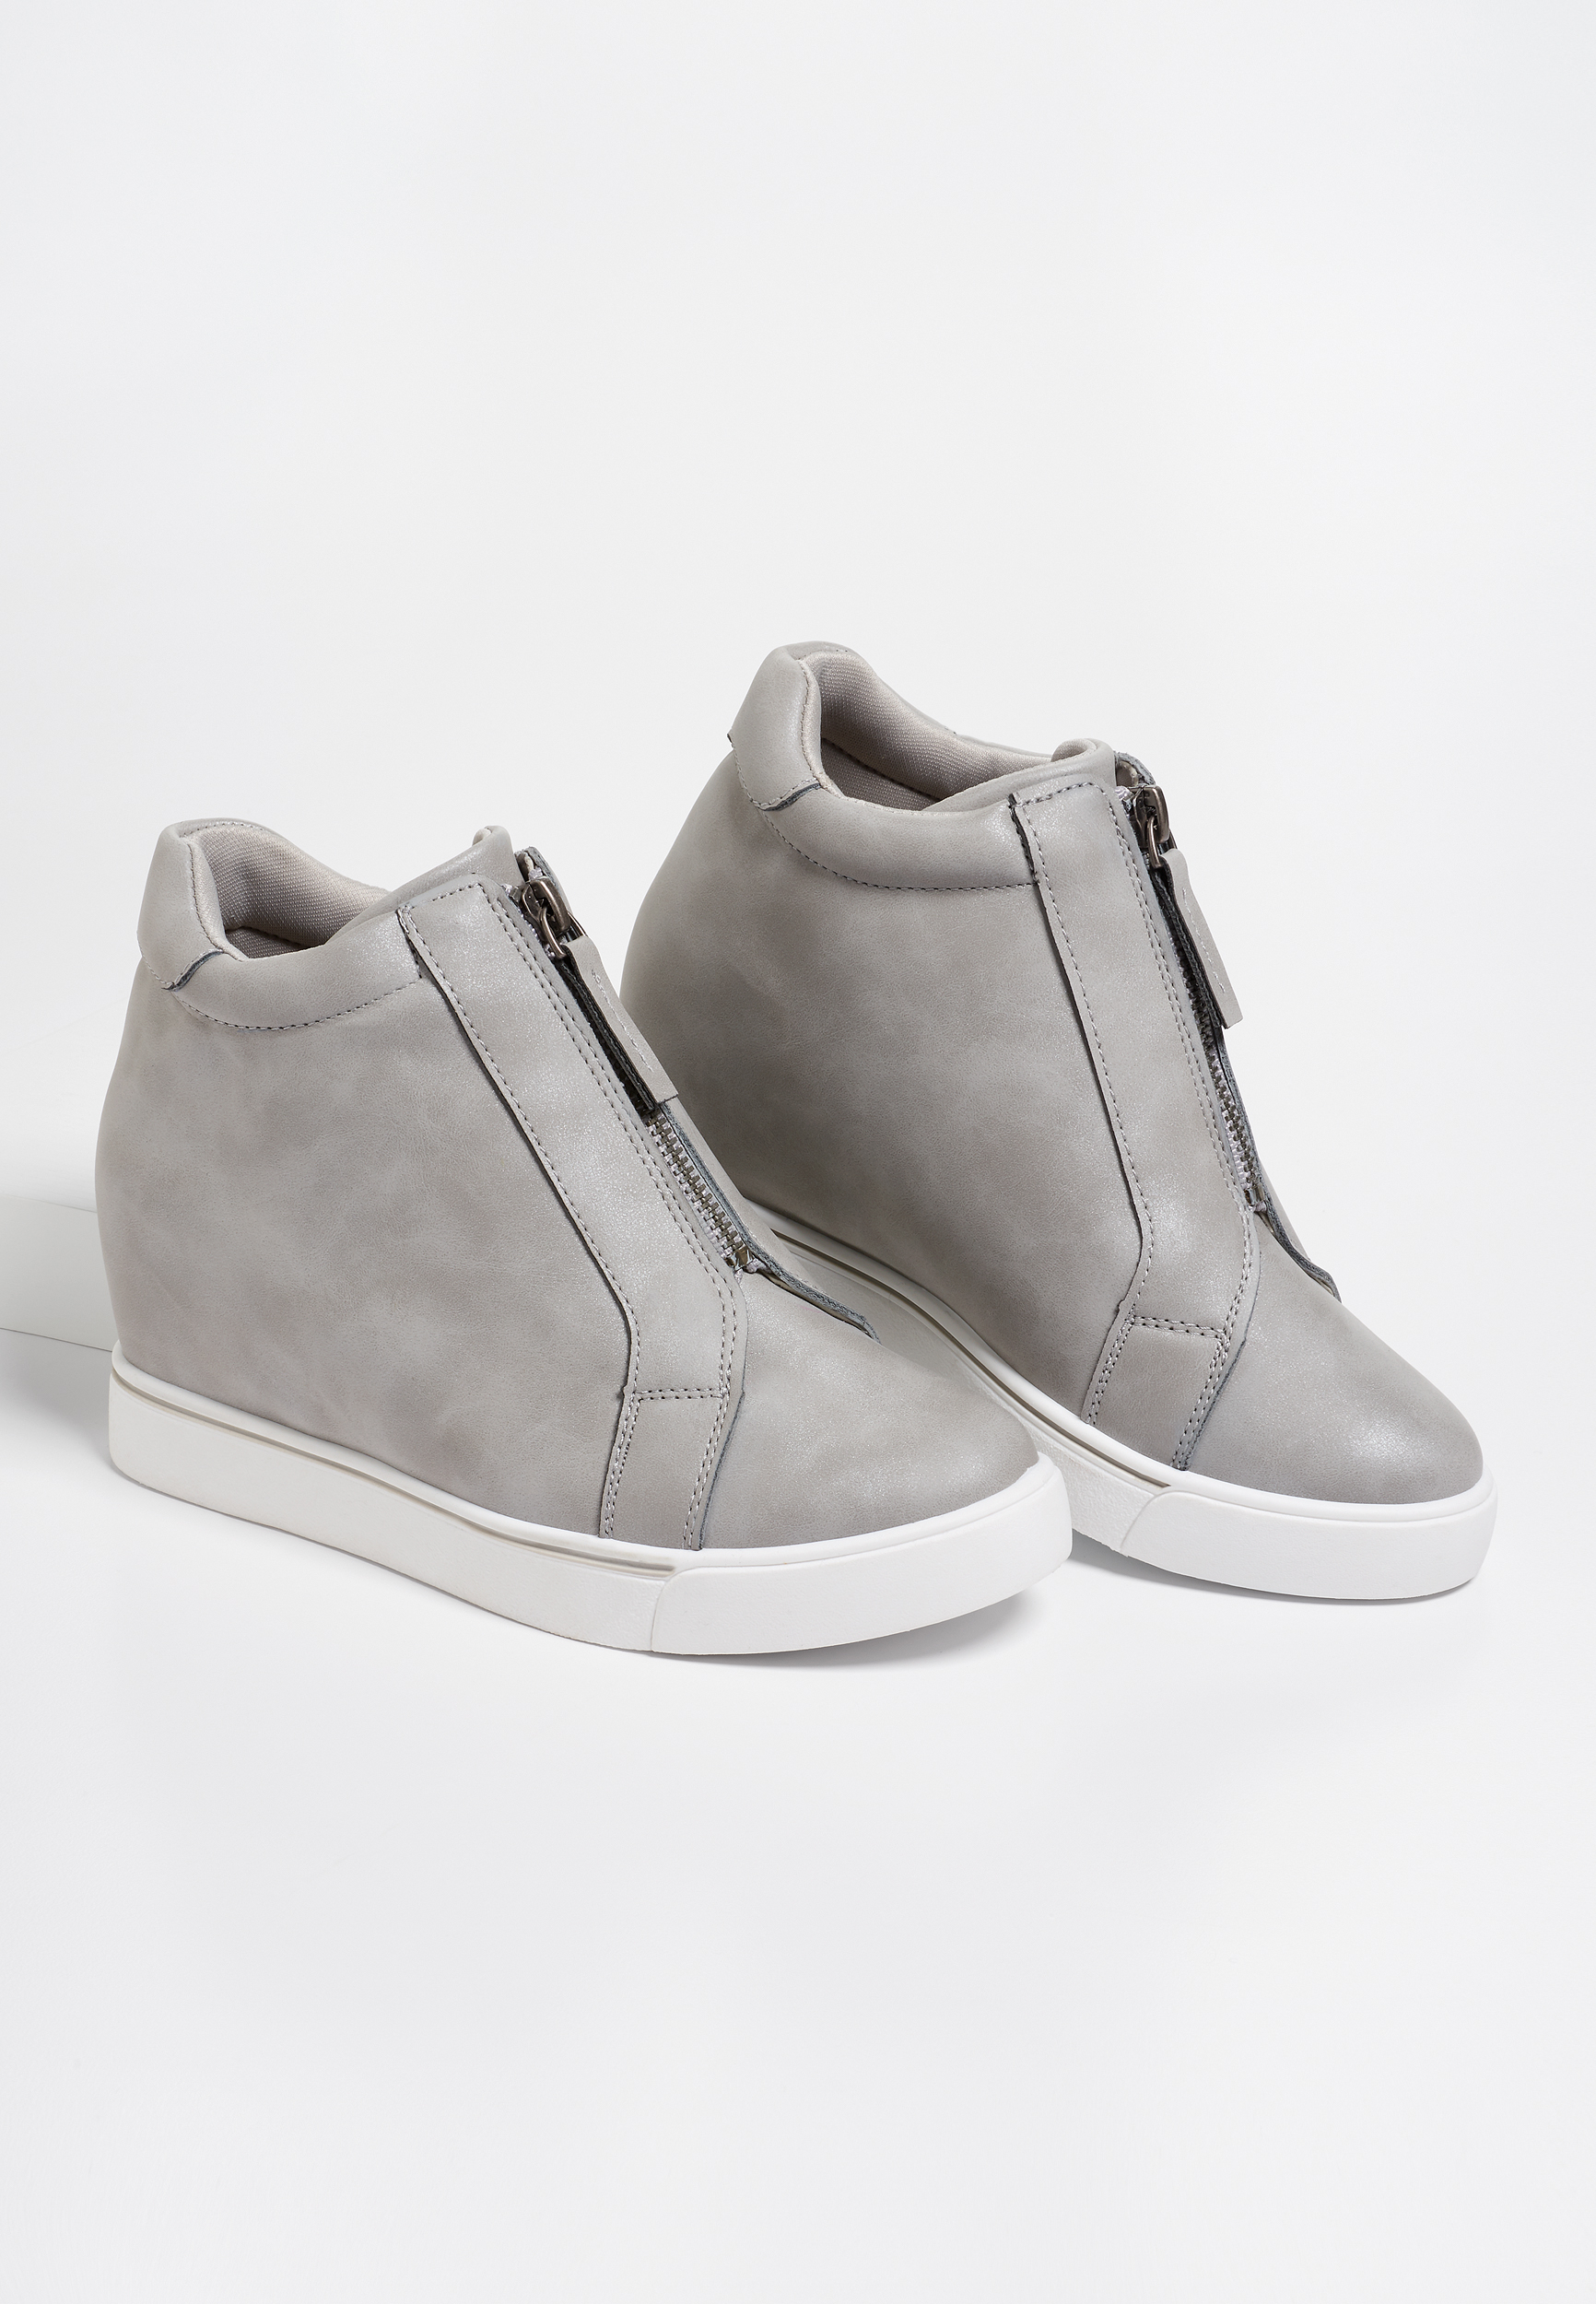 gray wedge sneakers